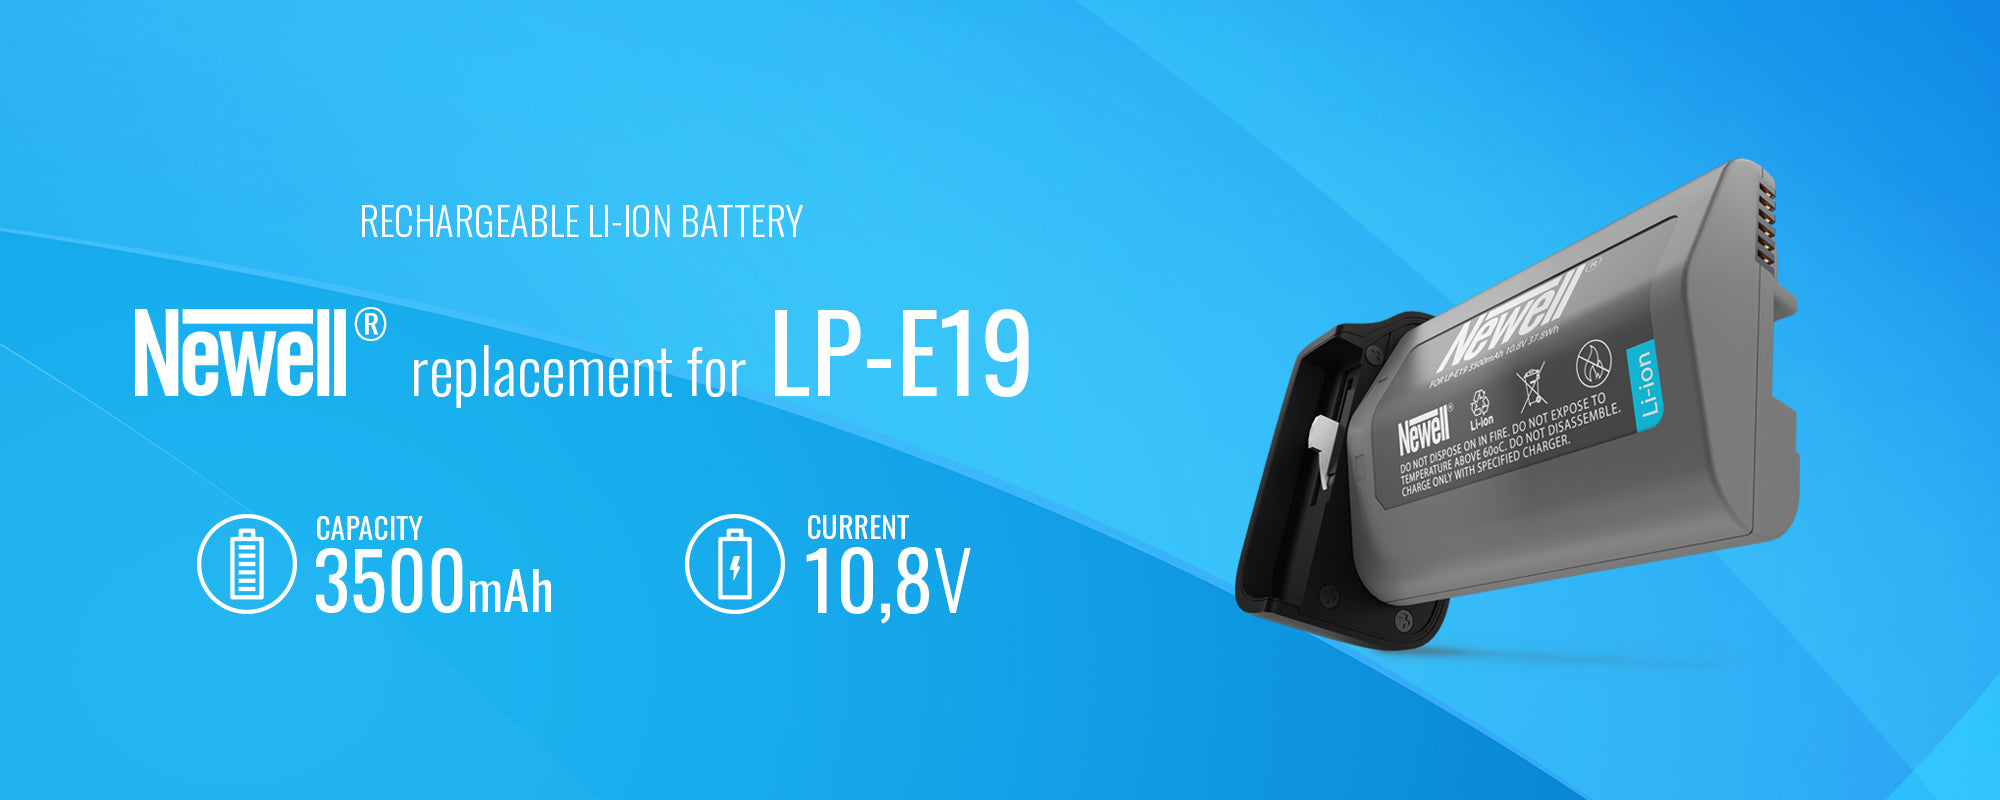 Newell battery LP-E19